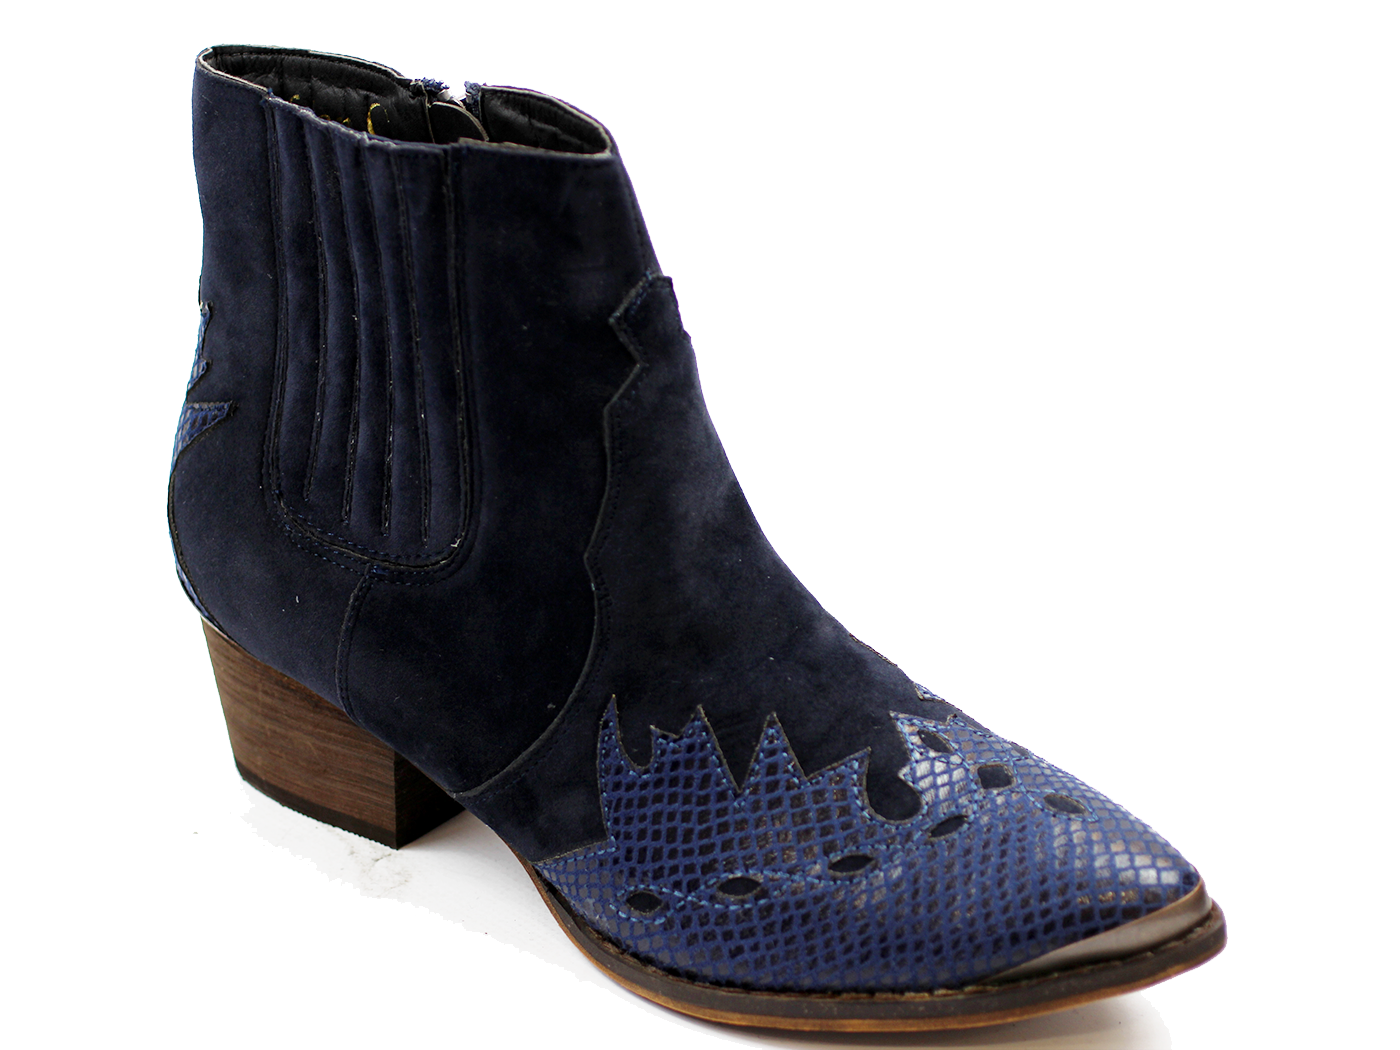 Venus Retro Seventies Blue 2-Tone Cuban Heel Boots